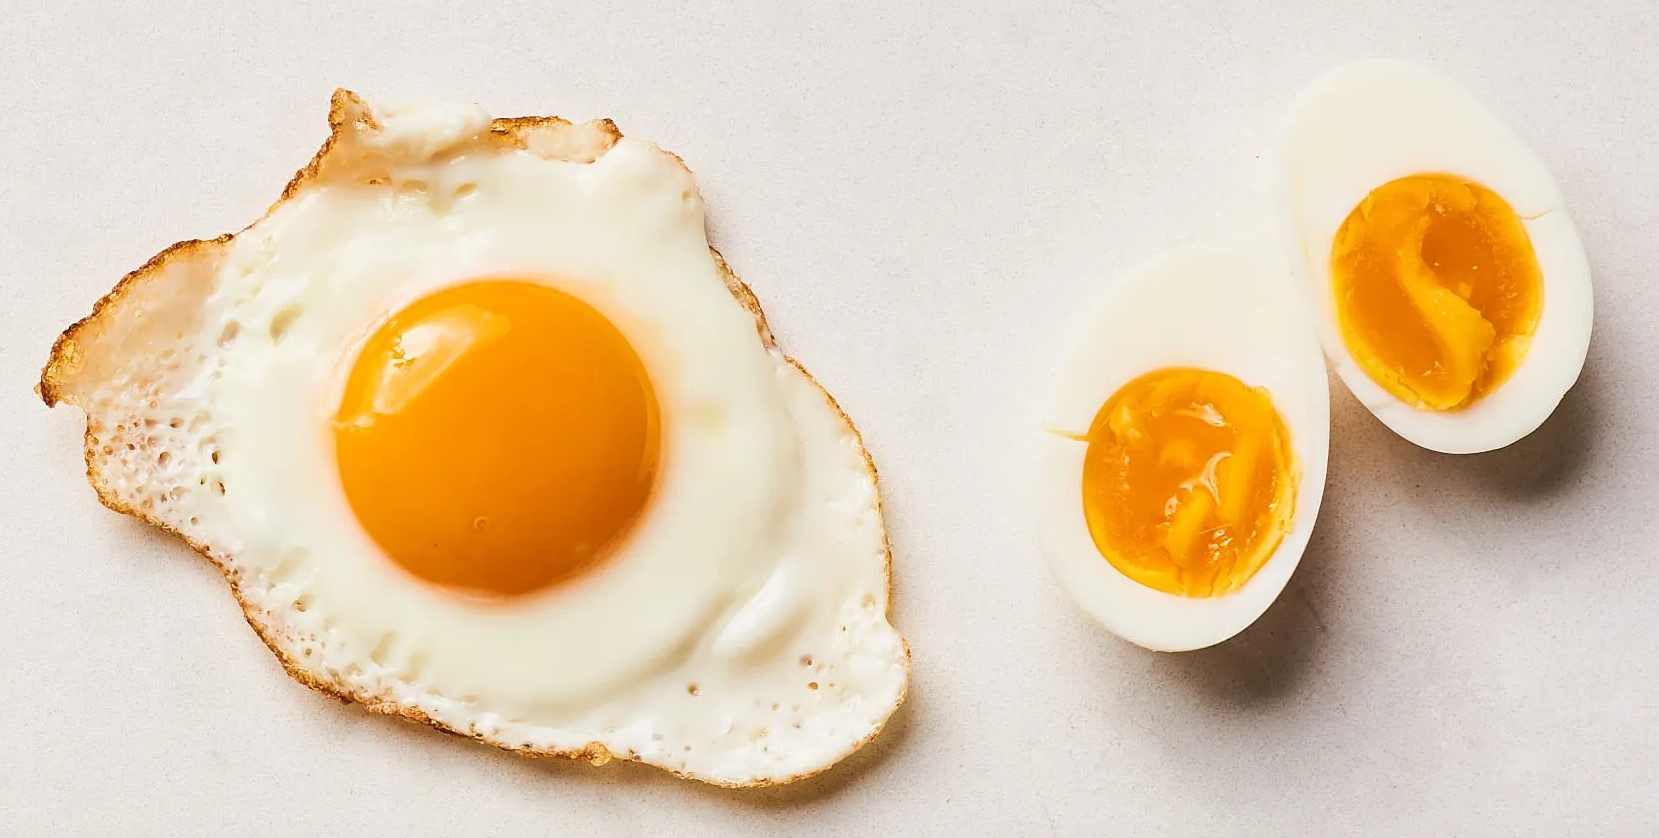 Δείτε πόσα αυγά μπορείτε να καταναλώσετε καθημερινά αν έχετε χοληστερίνη